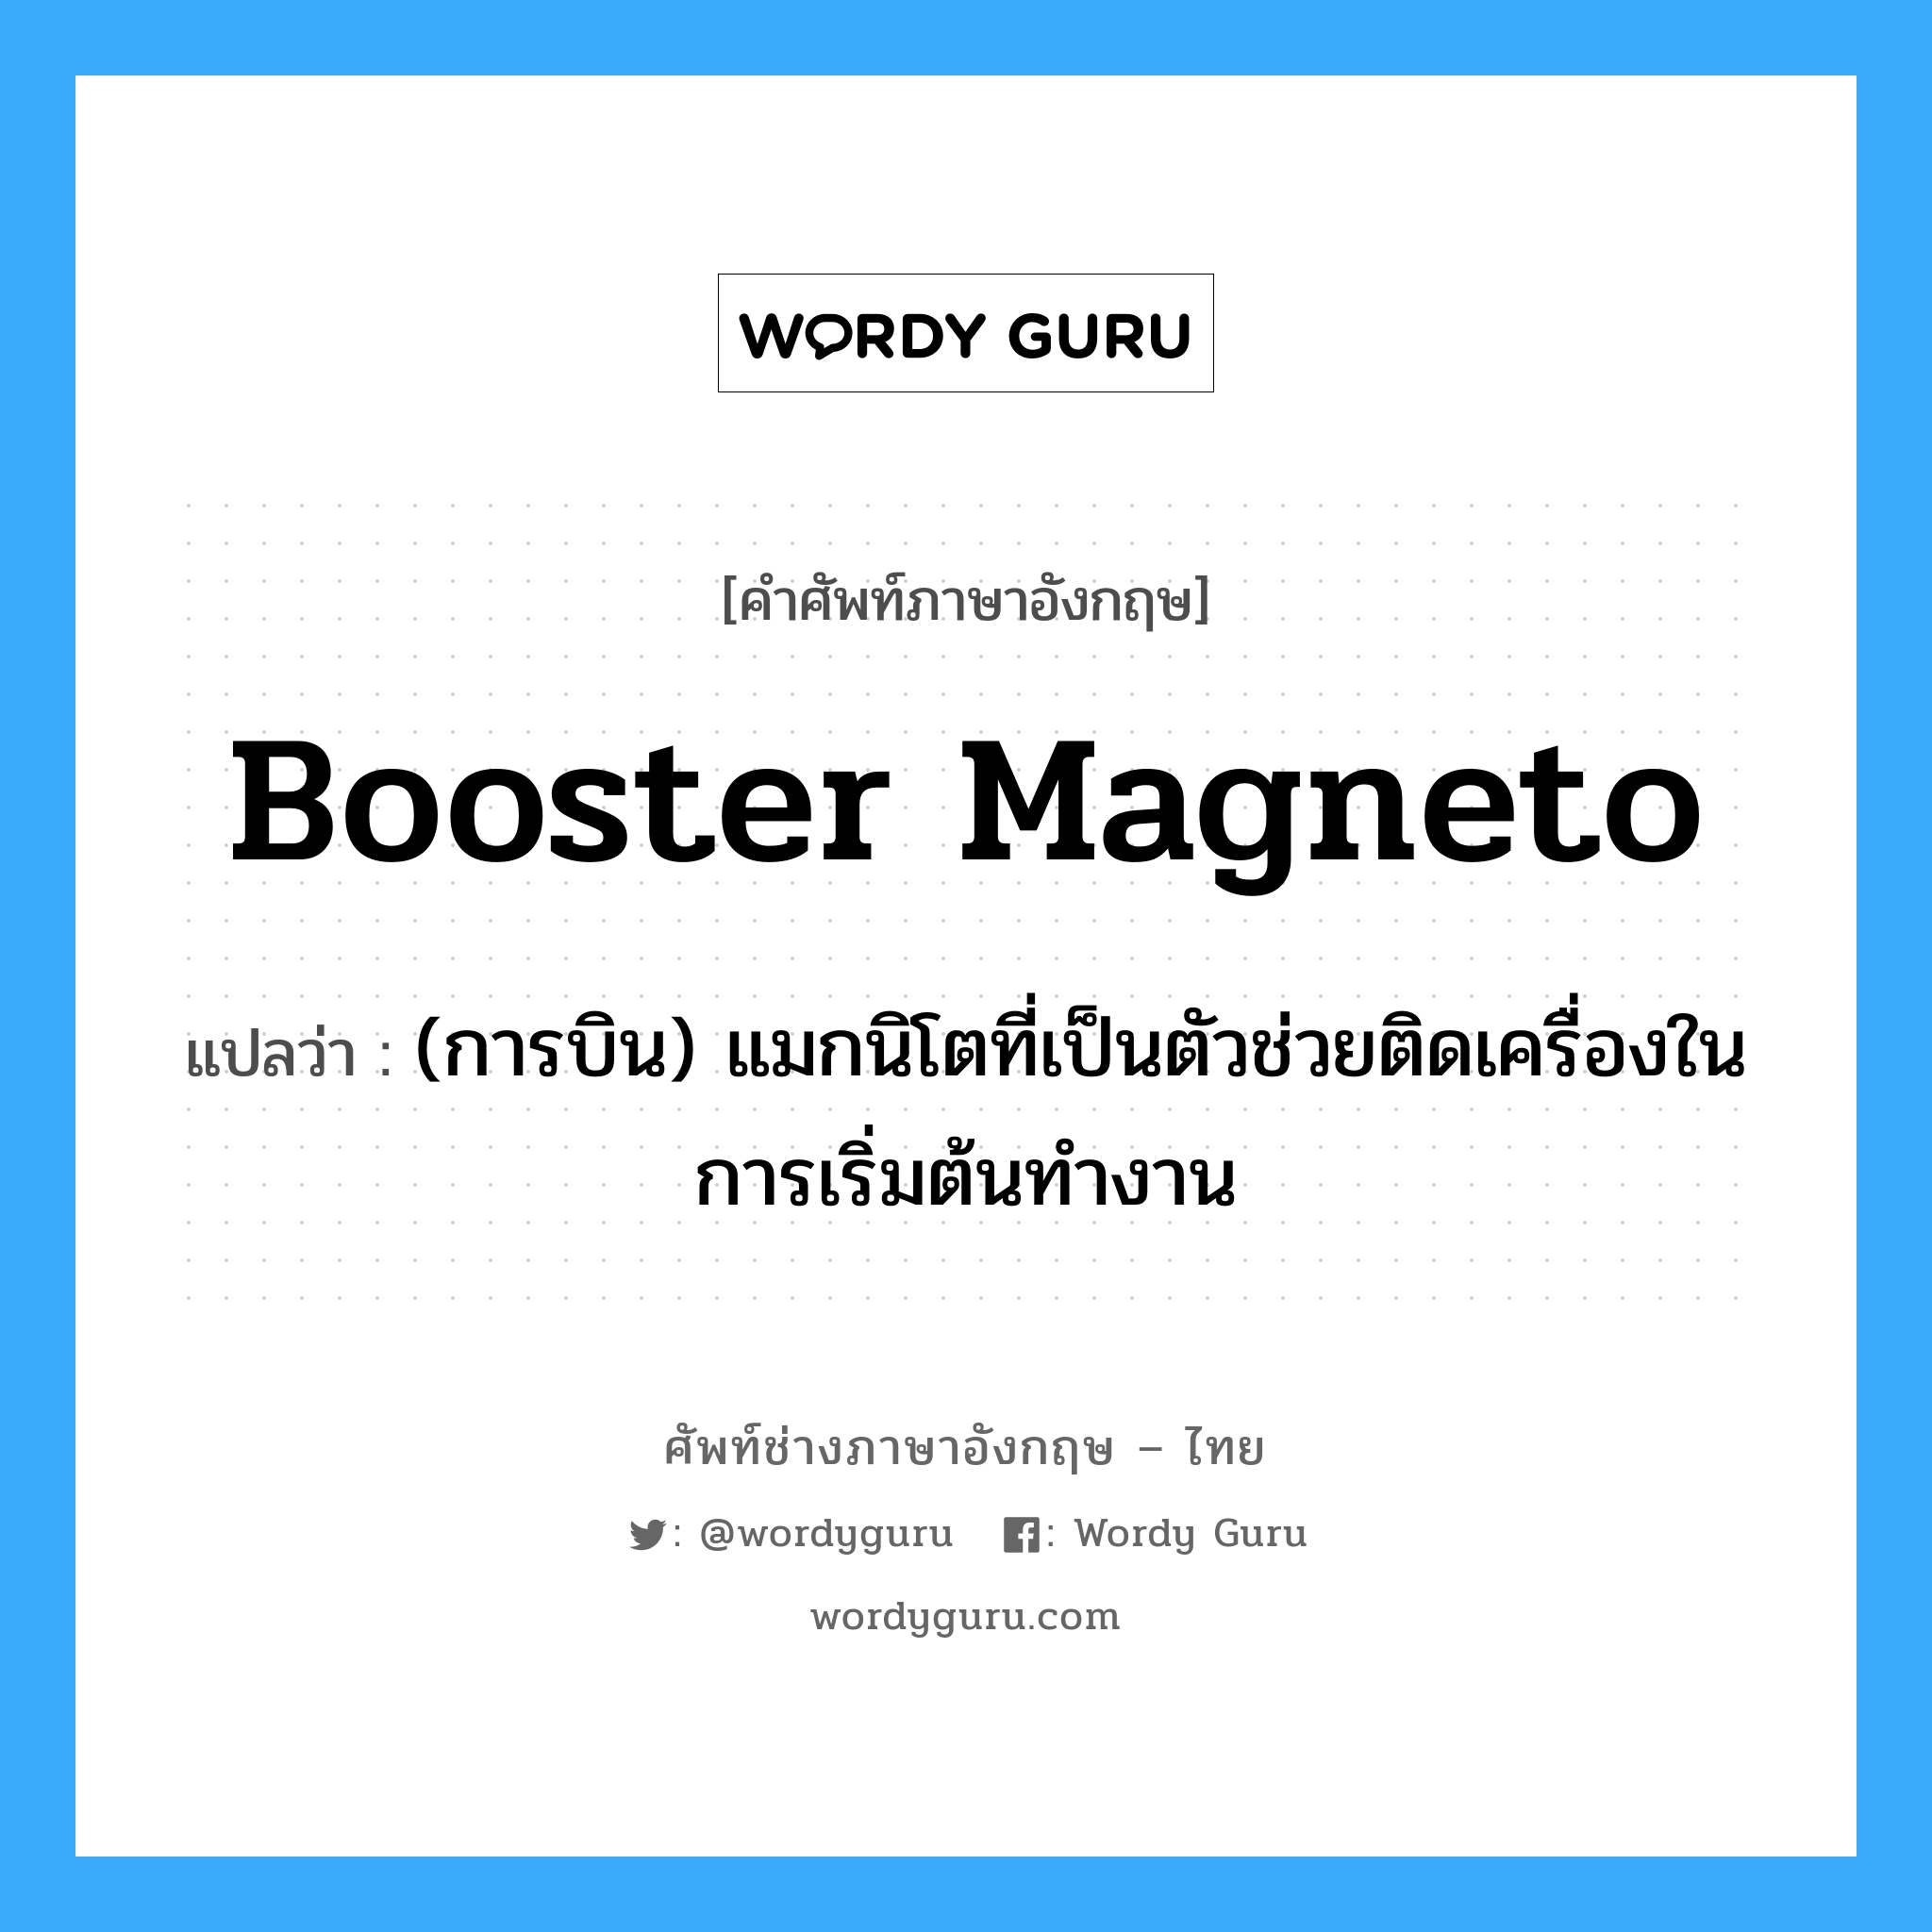 booster magneto แปลว่า?, คำศัพท์ช่างภาษาอังกฤษ - ไทย booster magneto คำศัพท์ภาษาอังกฤษ booster magneto แปลว่า (การบิน) แมกนิโตที่เป็นตัวช่วยติดเครื่องในการเริ่มต้นทำงาน